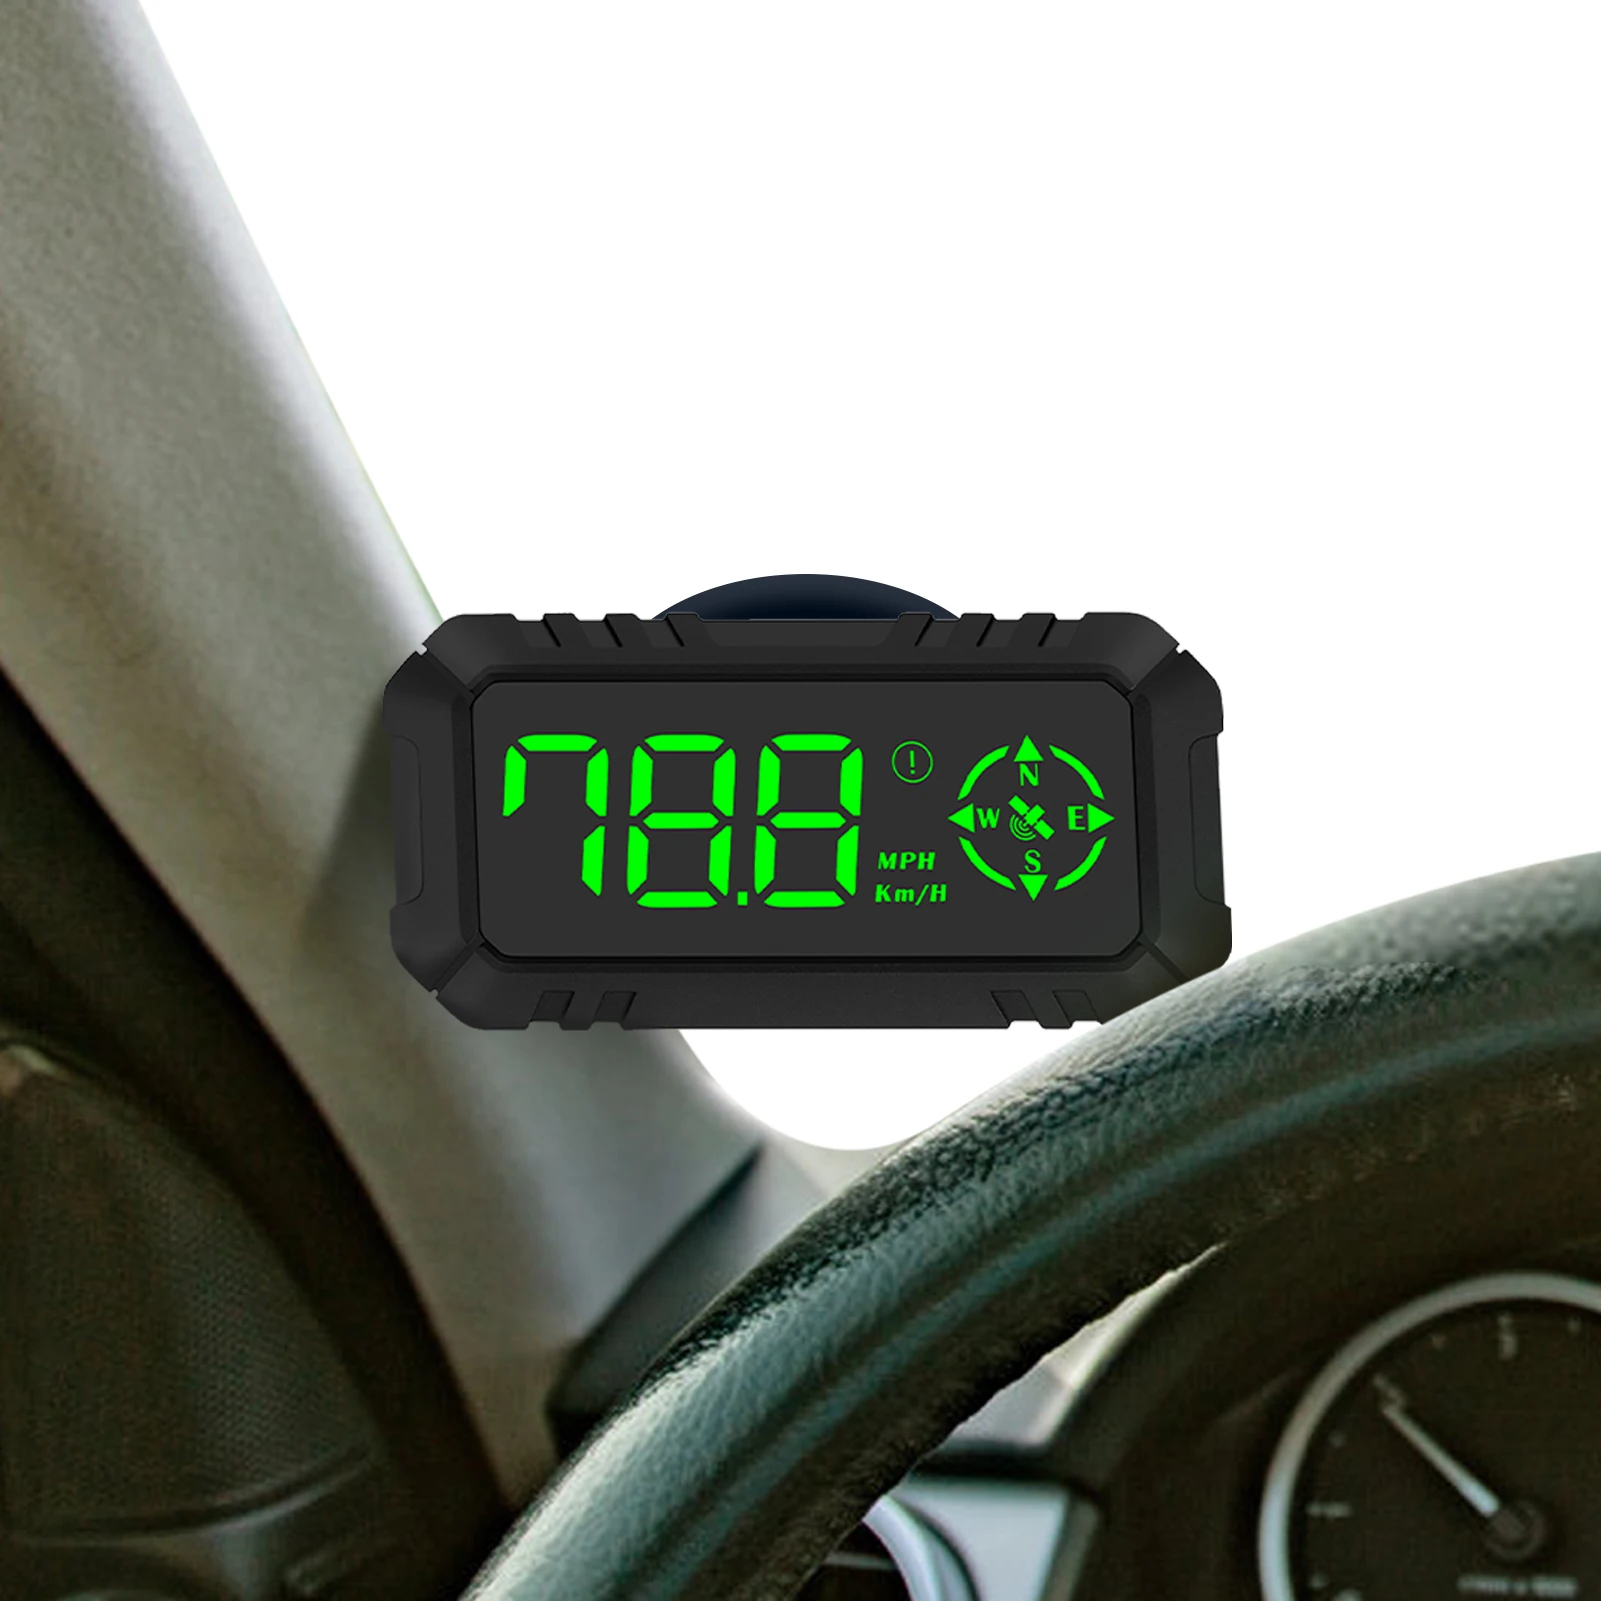 

Дисплей OBD Hud на лобовом стекле, превышение скорости, автоматическая сигнализация, USB, дальность вождения, температура, автомобильные аксесс...